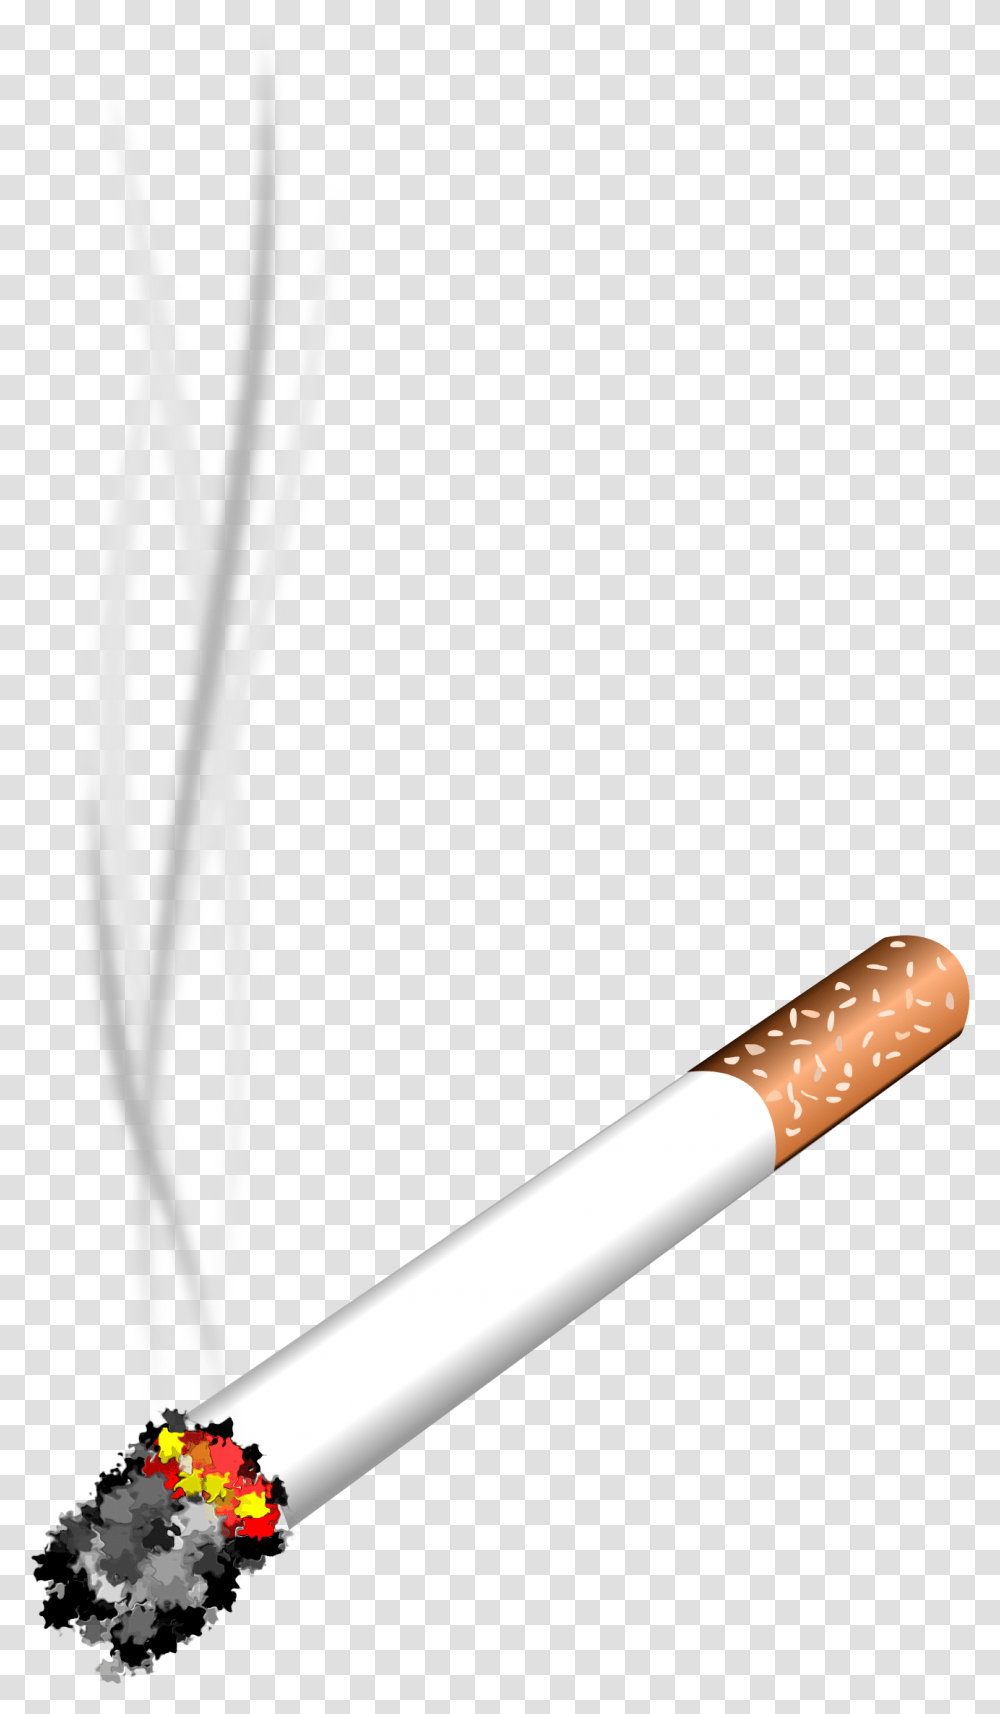 Cigarette Lit Cigarette Clipart, Smoking, Smoke, Plant Transparent Png